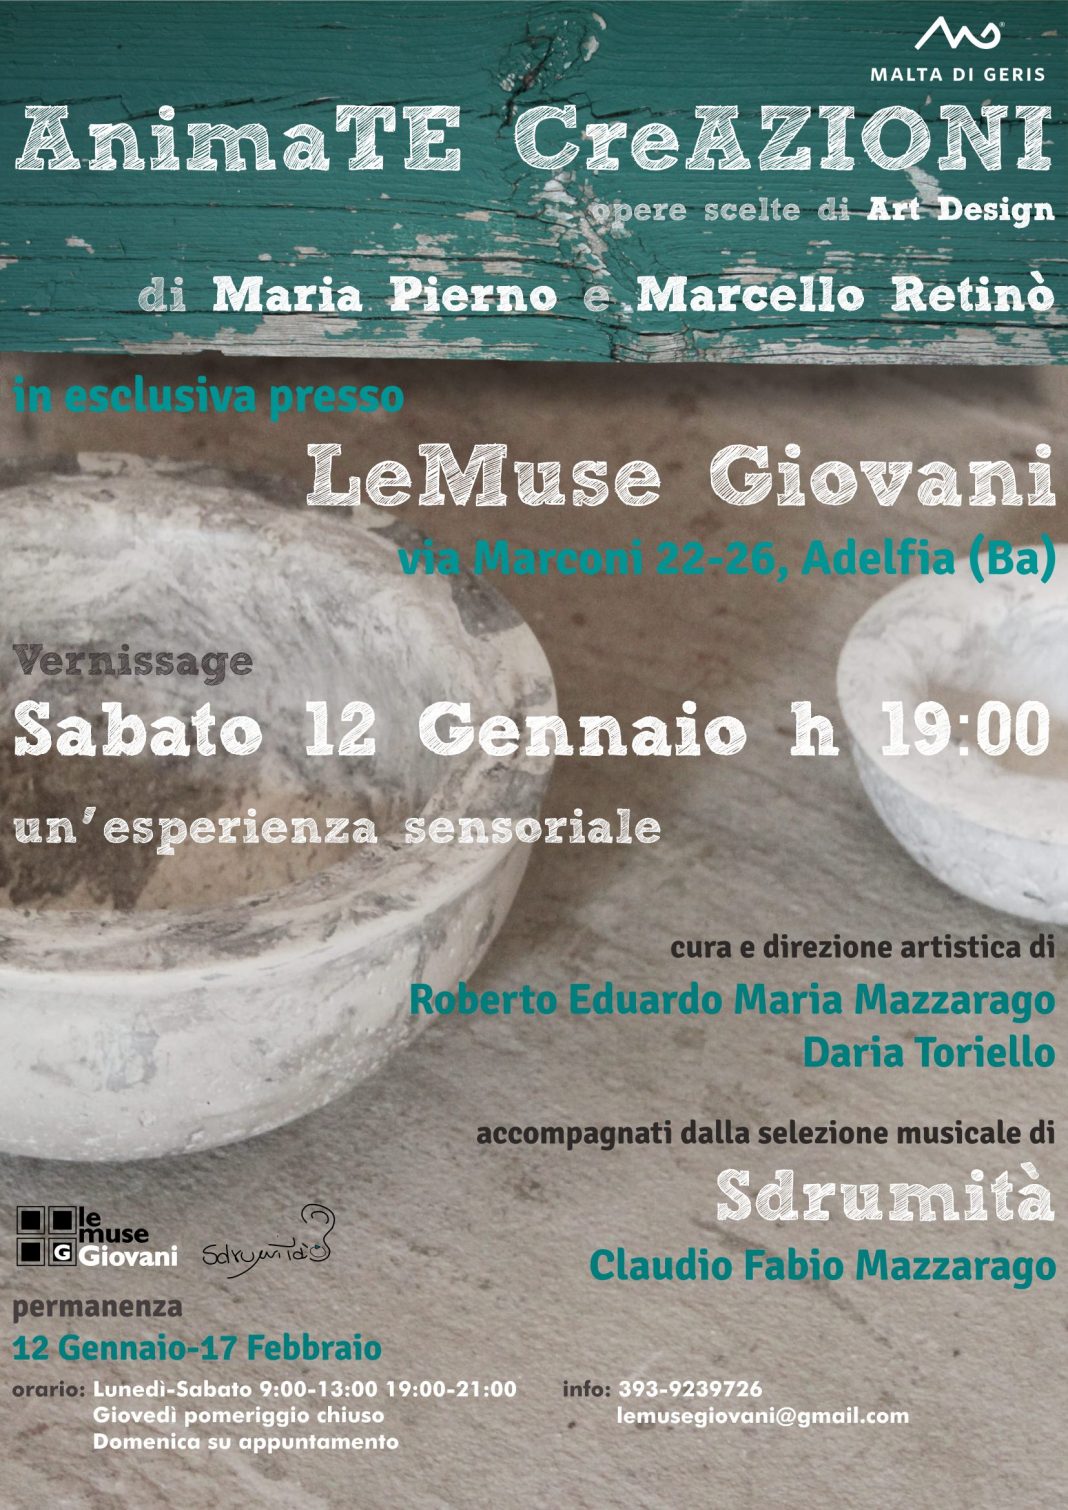 Maria Pierno / Marcello Retinò – AnimaTE CreAZIONIhttps://www.exibart.com/repository/media/eventi/2012/12/maria-pierno-marcello-retinò-8211-animate-creazioni-1068x1510.jpg